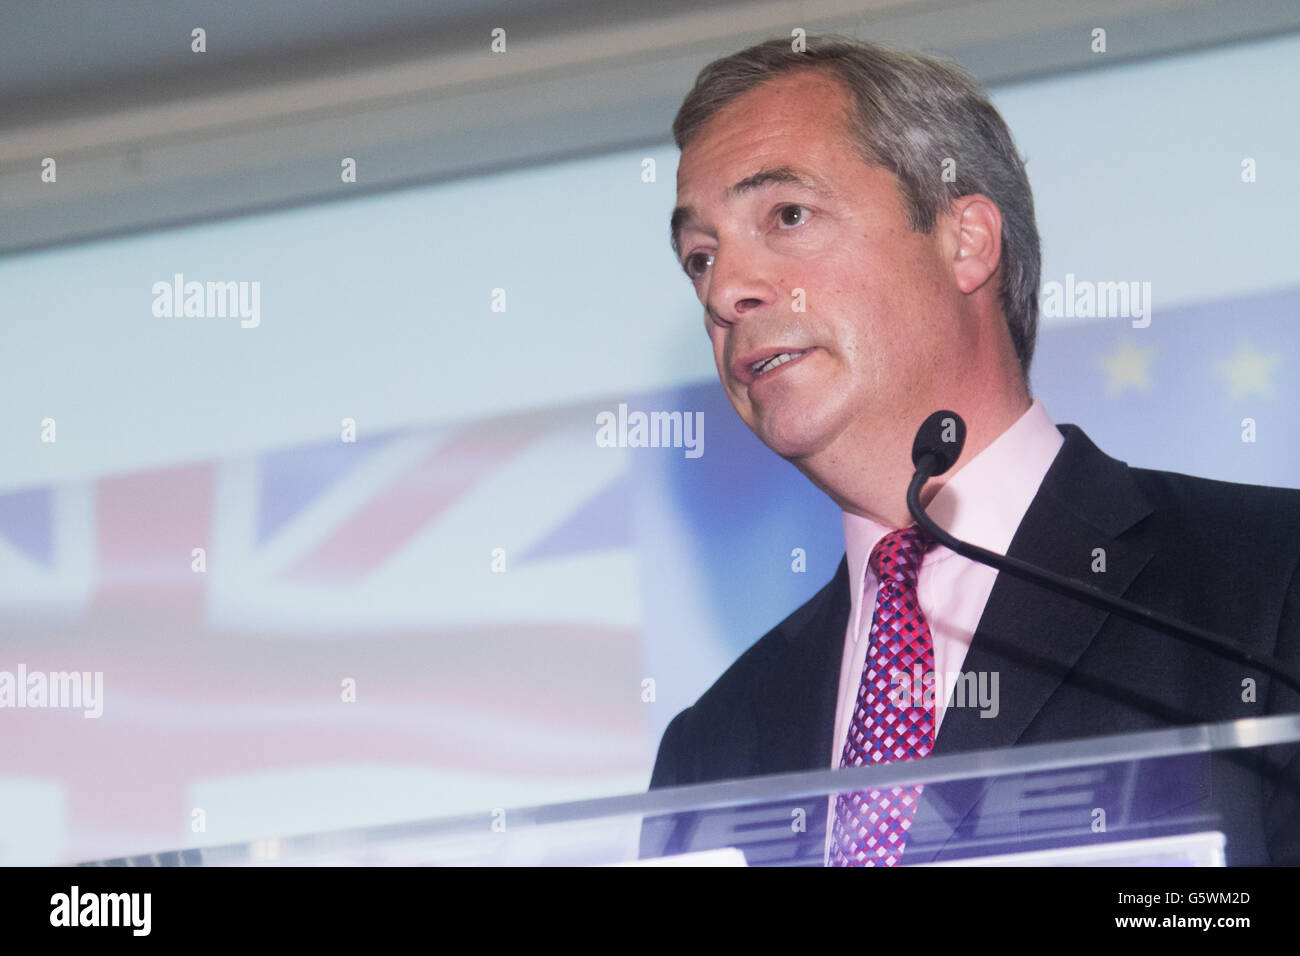 Emmanuel Centre, Westminster, London, 22. Juni 2016. Die UKIP Führer und lautstarken Anti-EU-Kämpferin Nigel Farage liefert seine fi Stockfoto